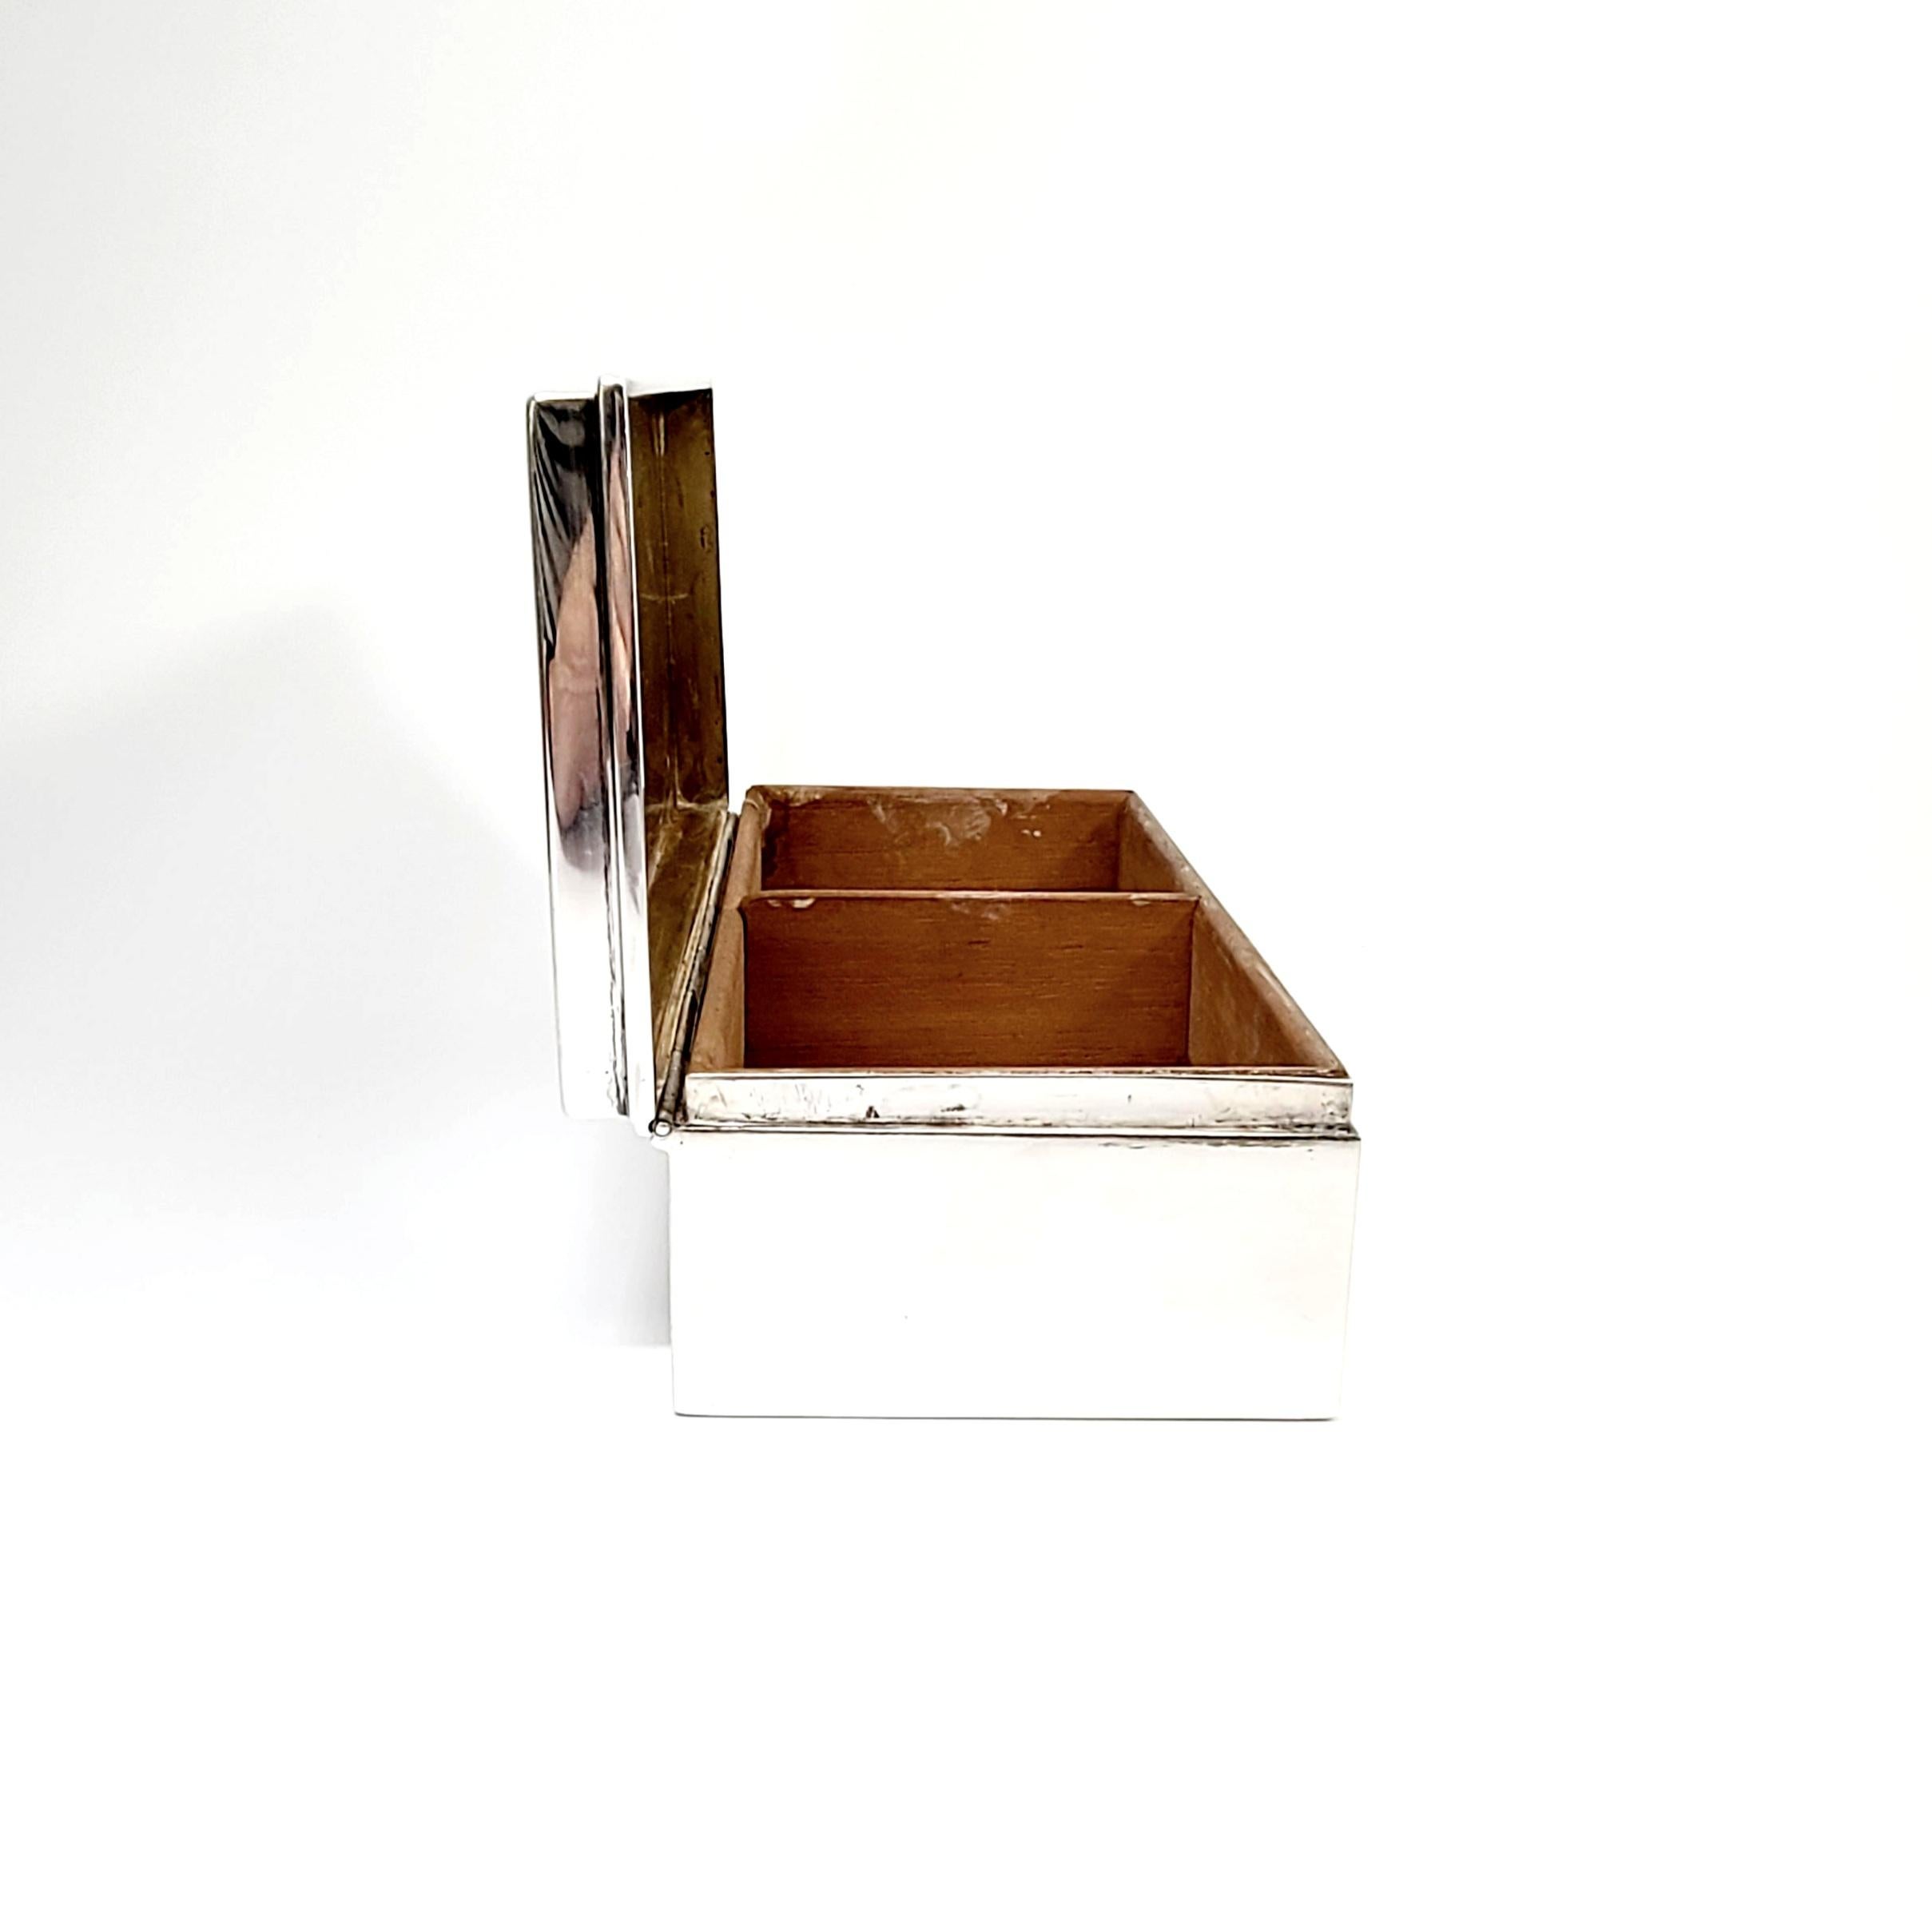 Sterlingsilber-Zigaretten-Schreibtischschachtel von Tiffany & Co 23093 (Europäisch)